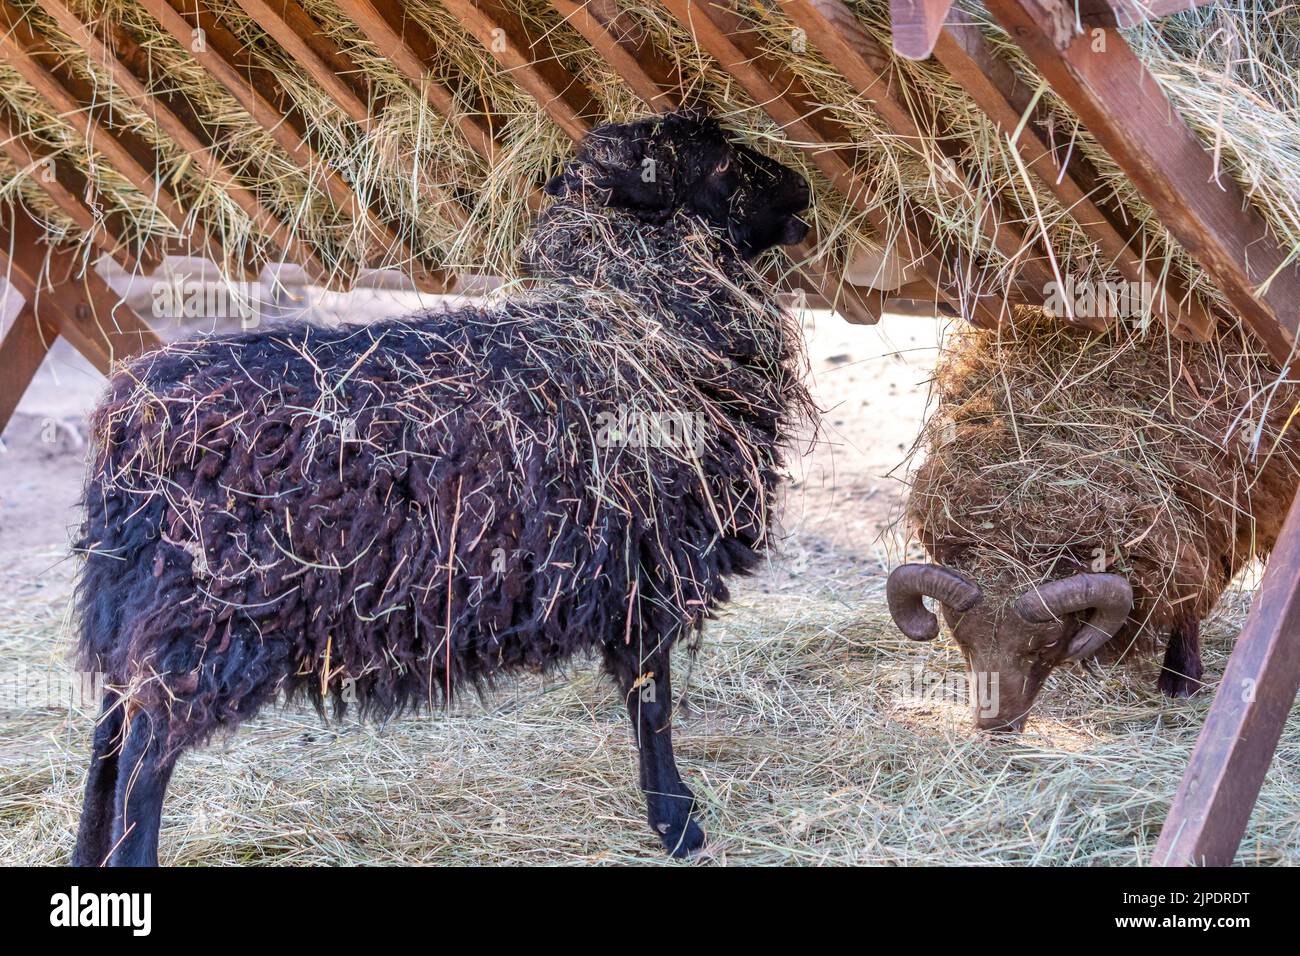 Le mouton Ouessant noir (Ewe) mange le foin. Le mouton Ouessant est l'un des plus petits moutons au monde, très souvent gardé comme animal de compagnie familial. Banque D'Images